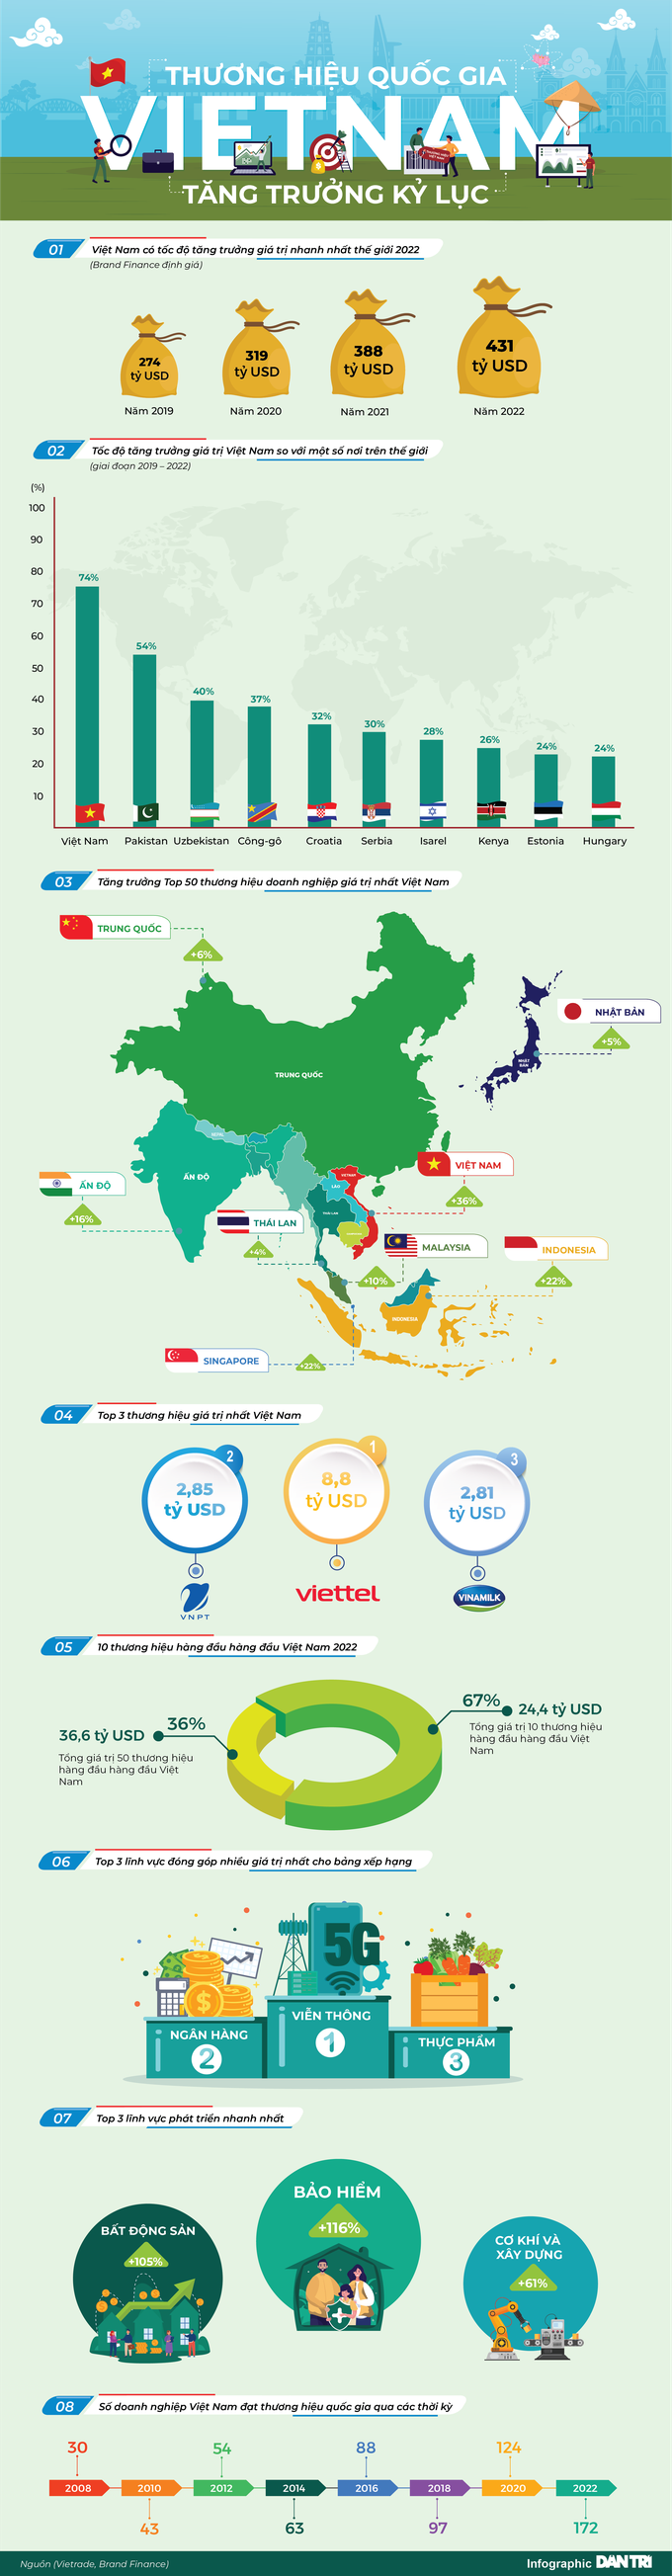 Thương hiệu quốc gia Việt Nam tăng kỷ lục: Loạt con số đáng chú ý